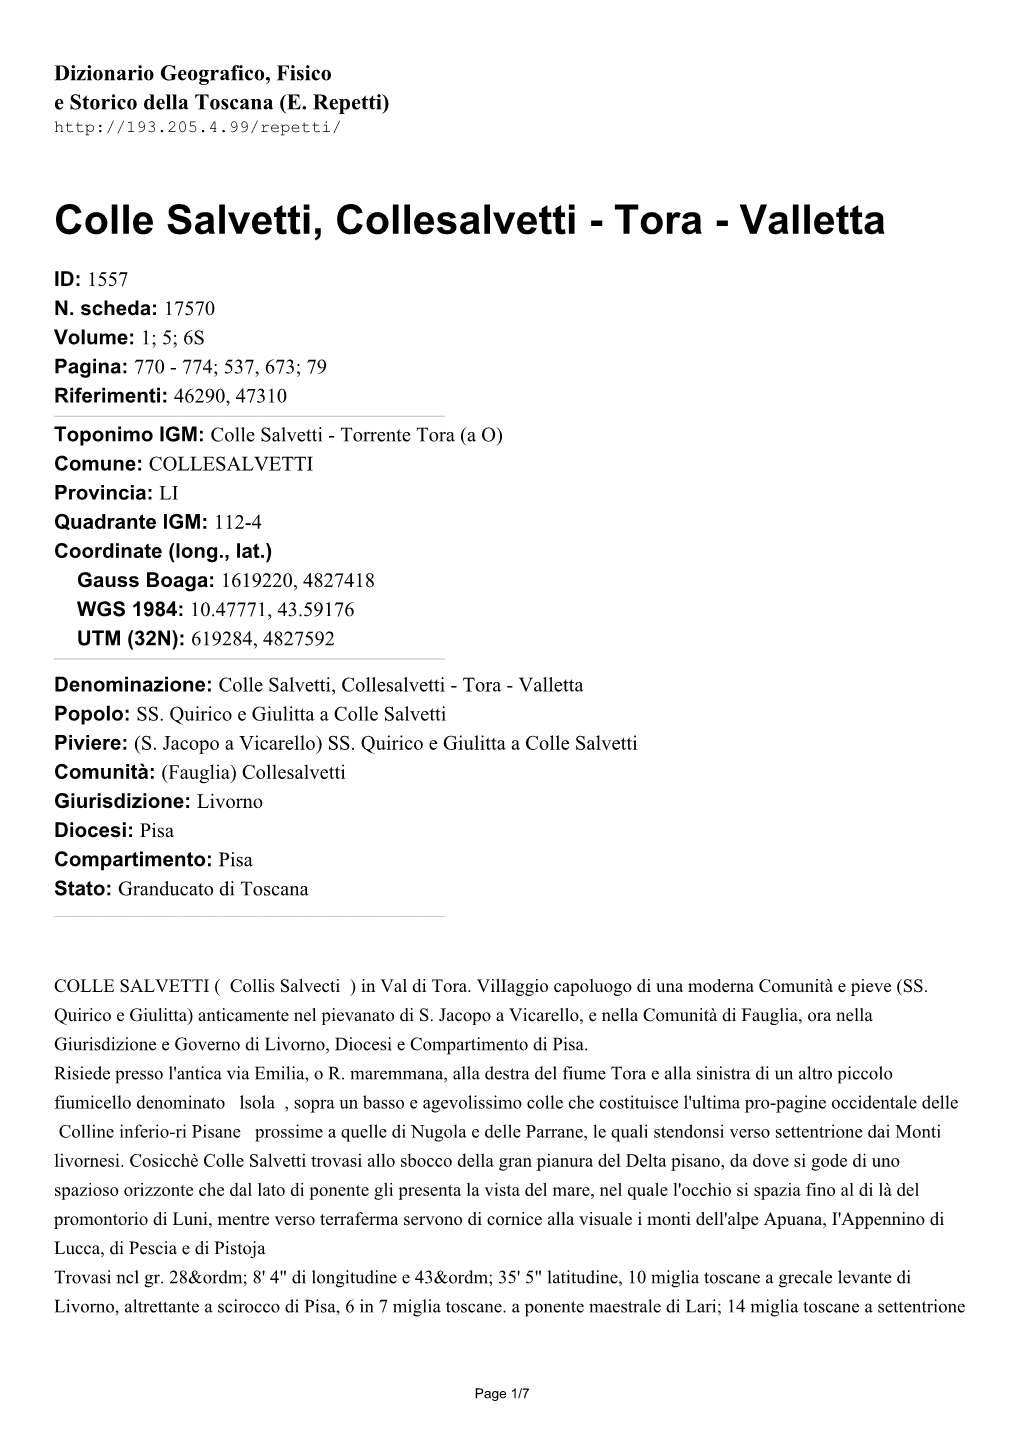 Colle Salvetti, Collesalvetti - Tora - Valletta